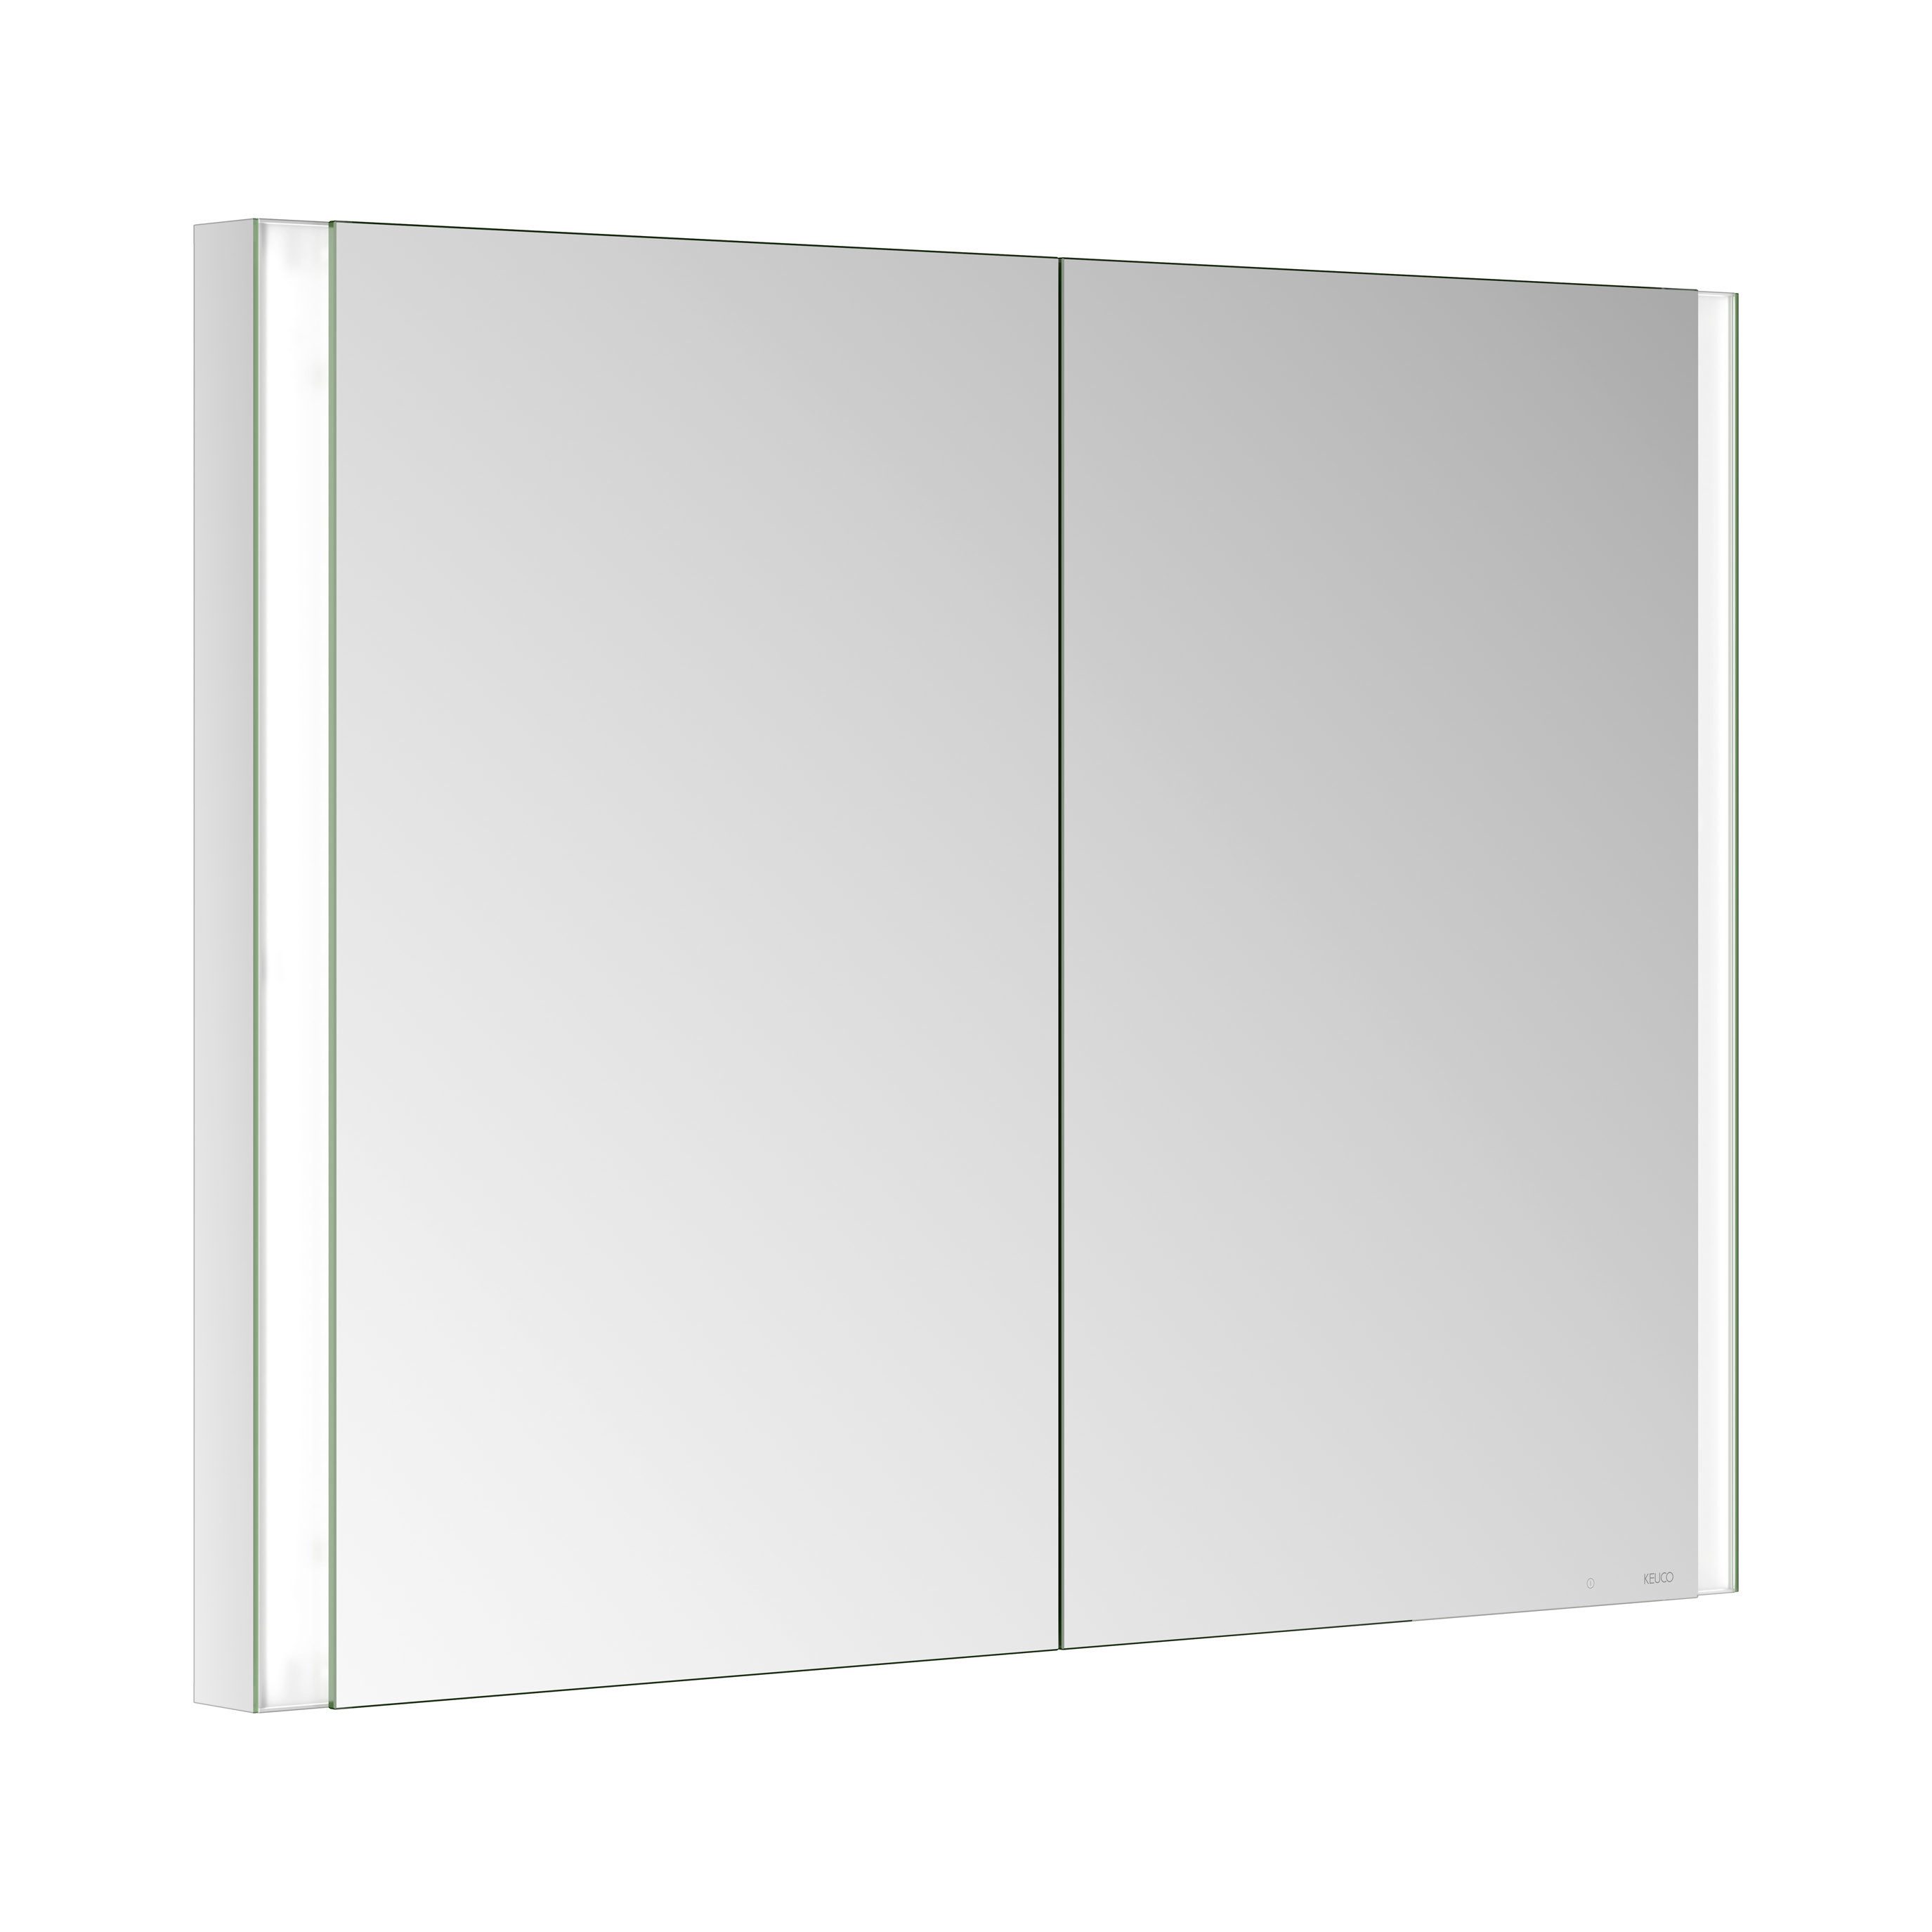 Keuco Badezimmerspiegelschrank Royal Finn Spiegelschrank LED, 100 cm, Unterputz, 2 Türen, Seiten verspiegelt